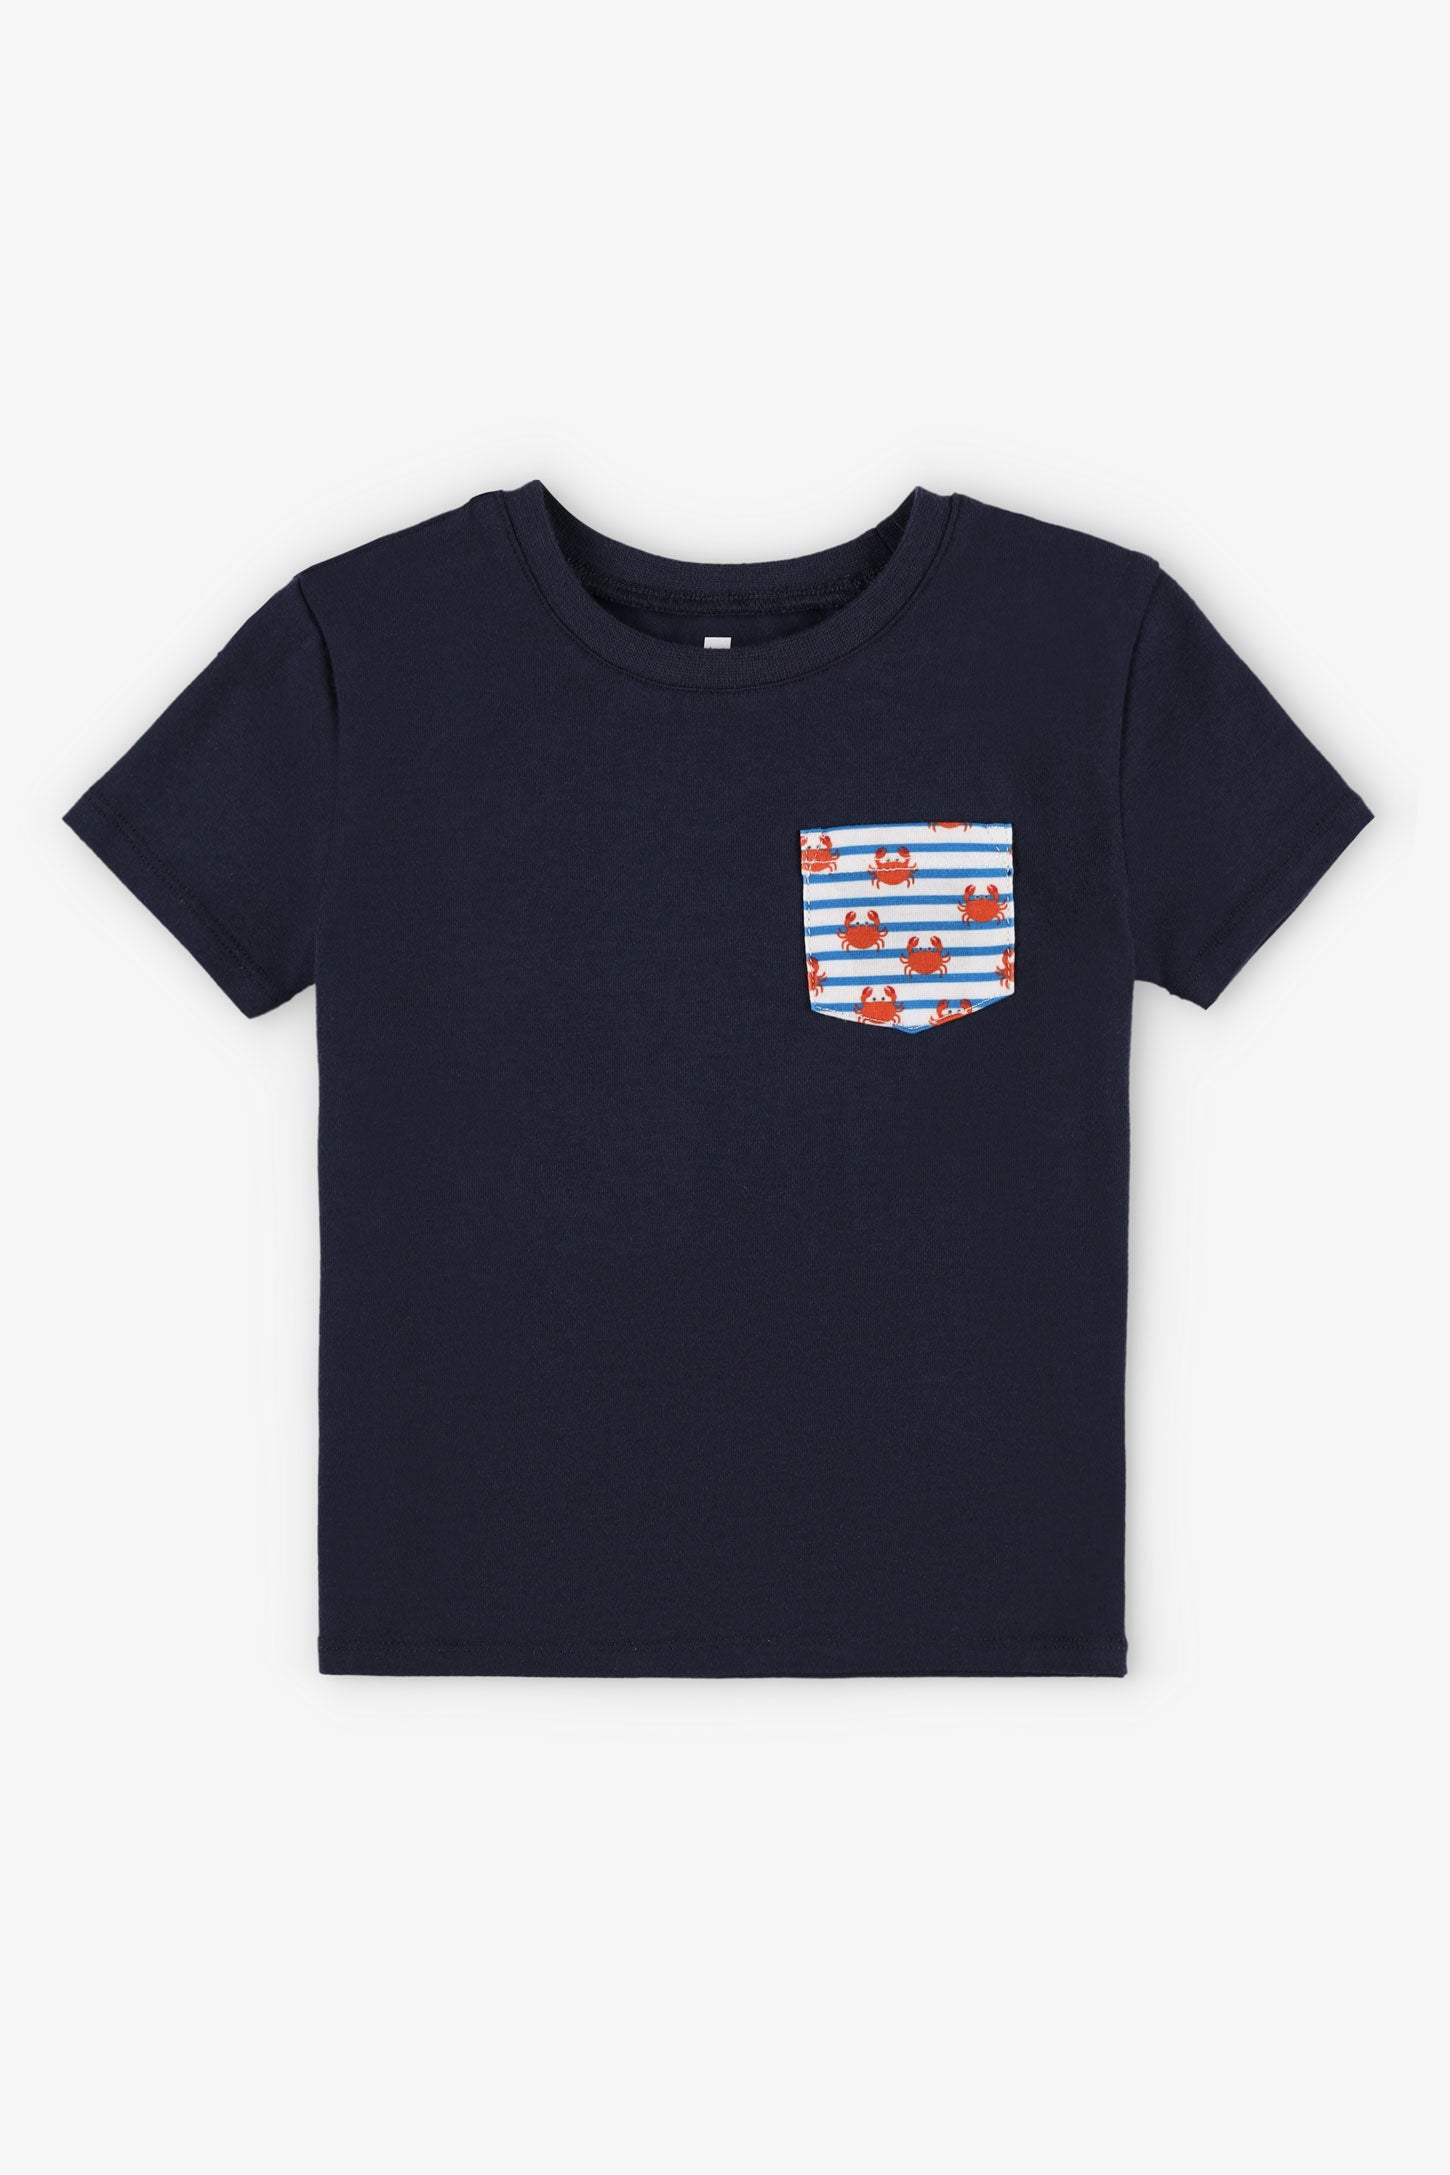 T-shirt rond coupe droite coton, 2T-3T, 2/15$ - Bébé garçon && BLEU MARINE